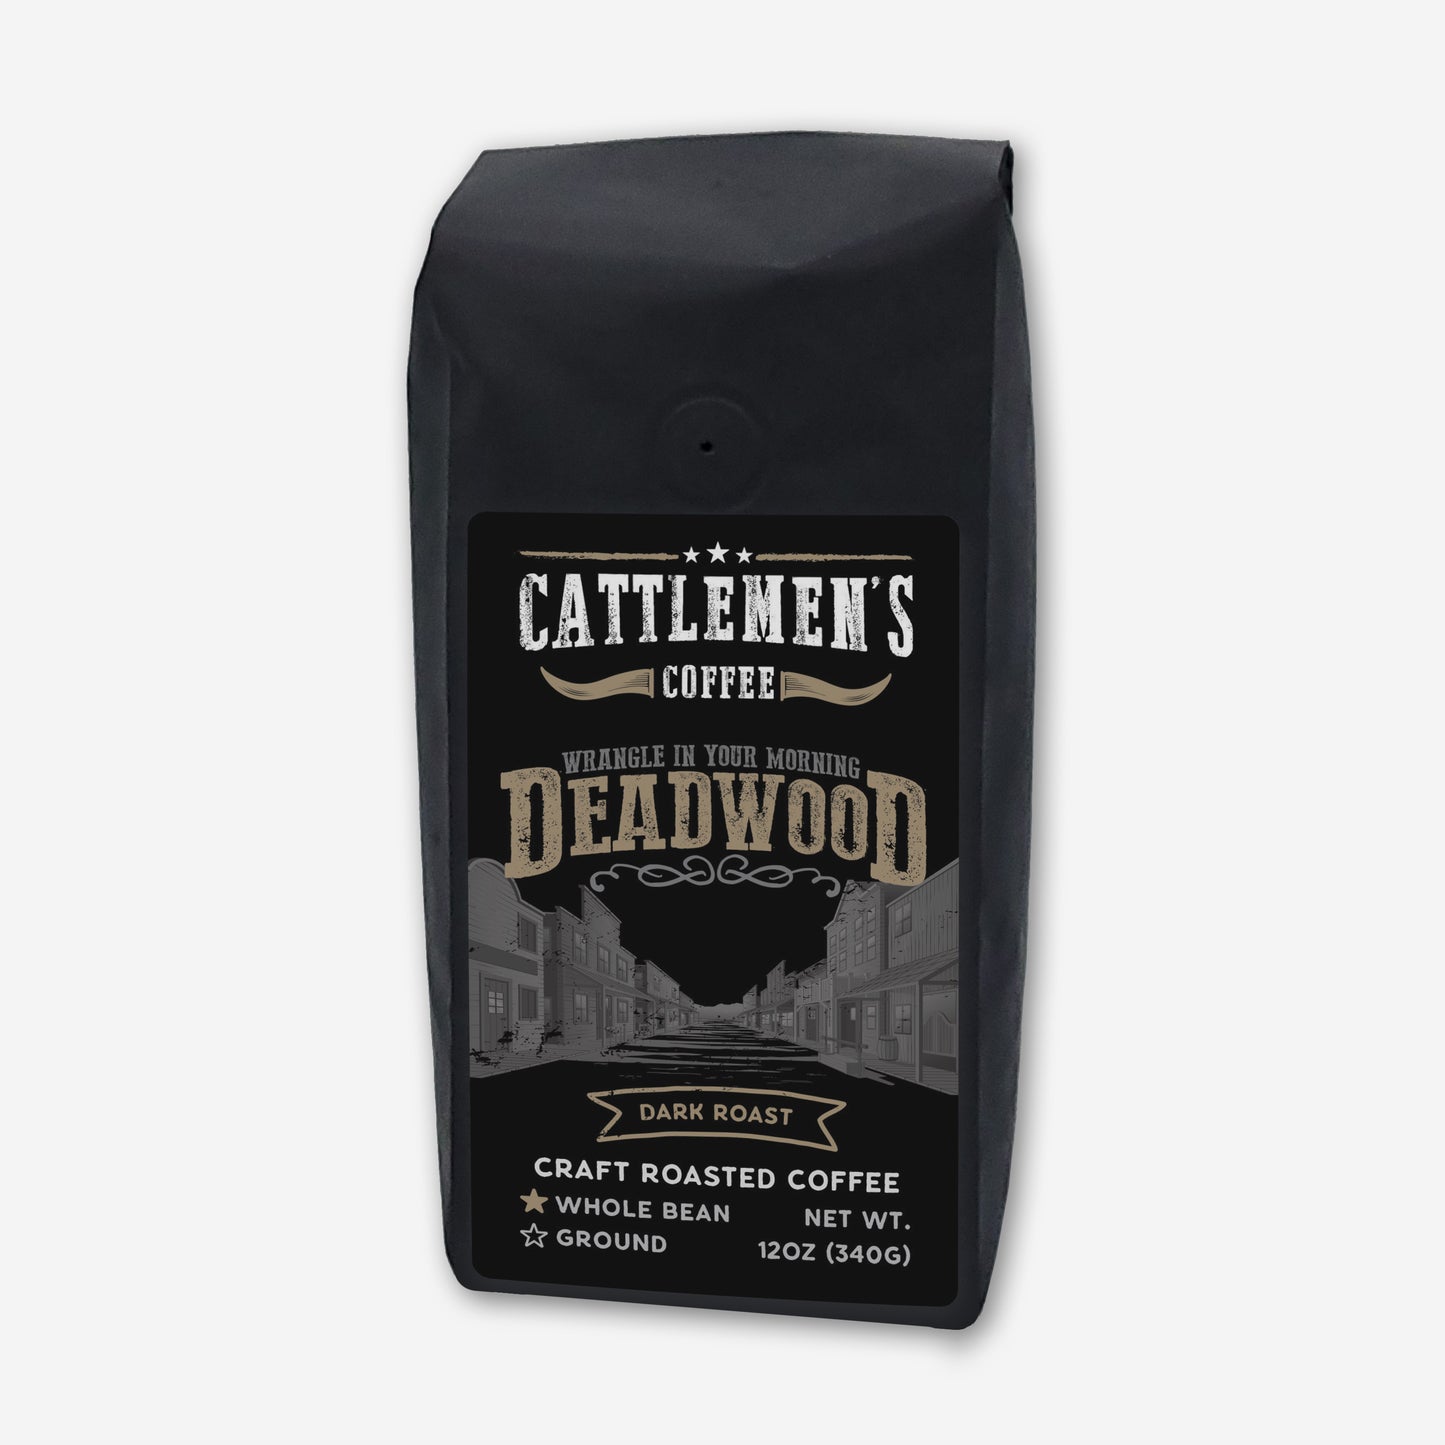 Deadwood Coffee Whole Bean